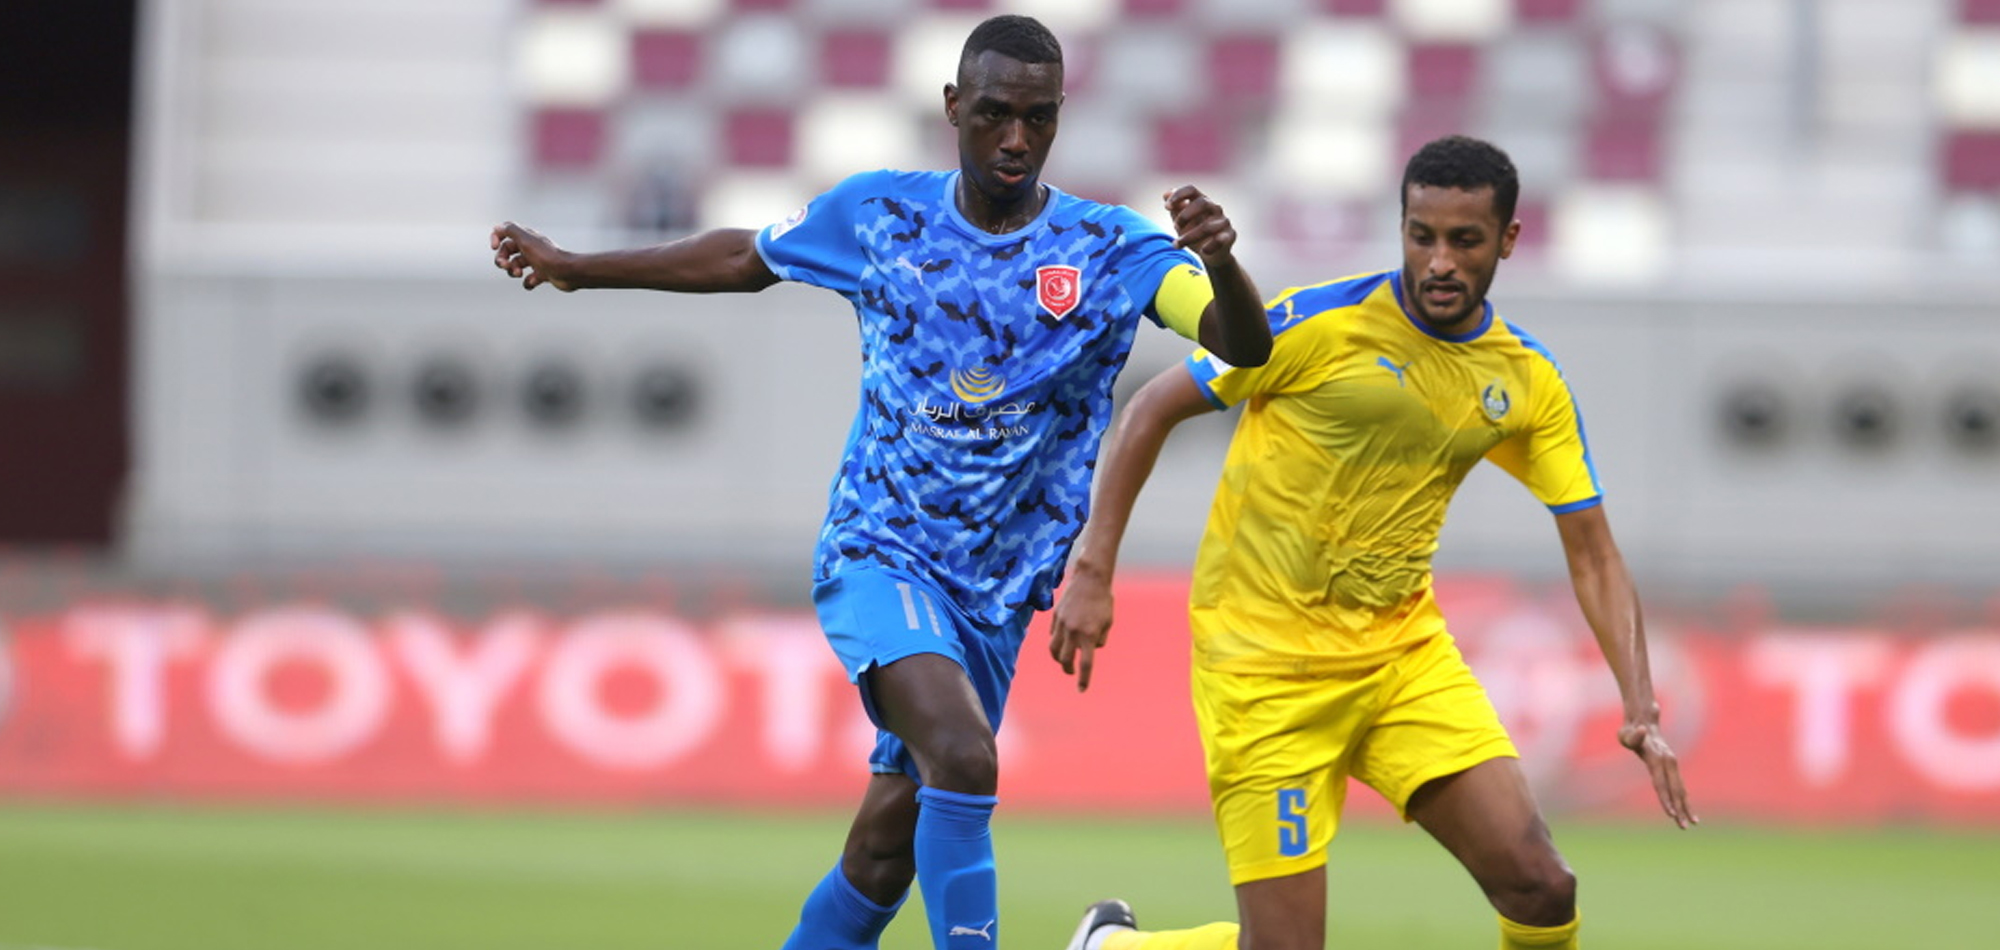 QNB Stars League Week 3 – Al Duhail 3 Al Gharafa 1